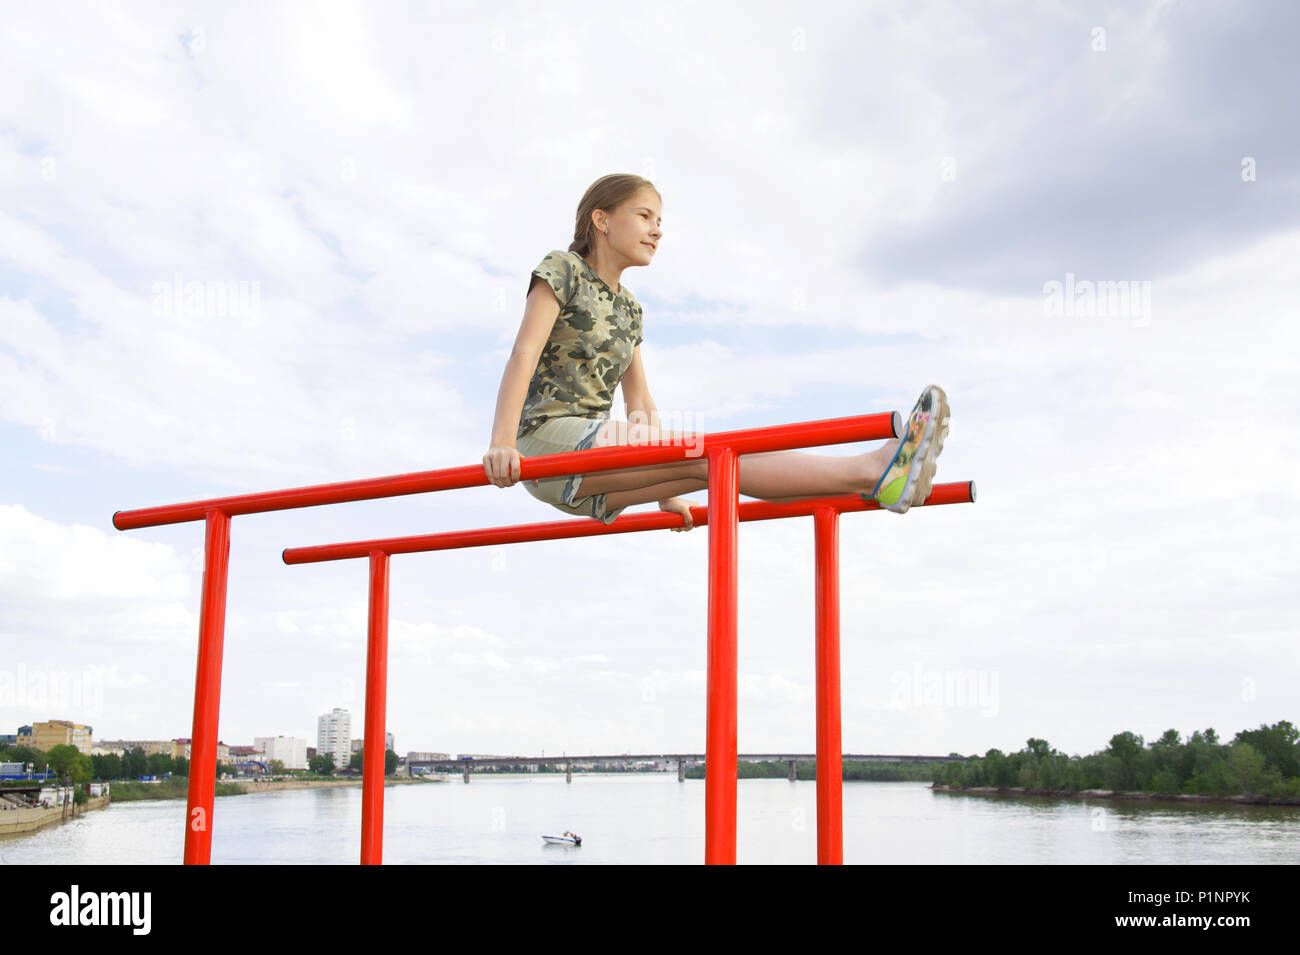 Athlétisme joyeux adolescente faisant une barre parallèle à profiter de l'extérieur. Dans l'arrière-plan, la rivière et le paysage urbain Banque D'Images